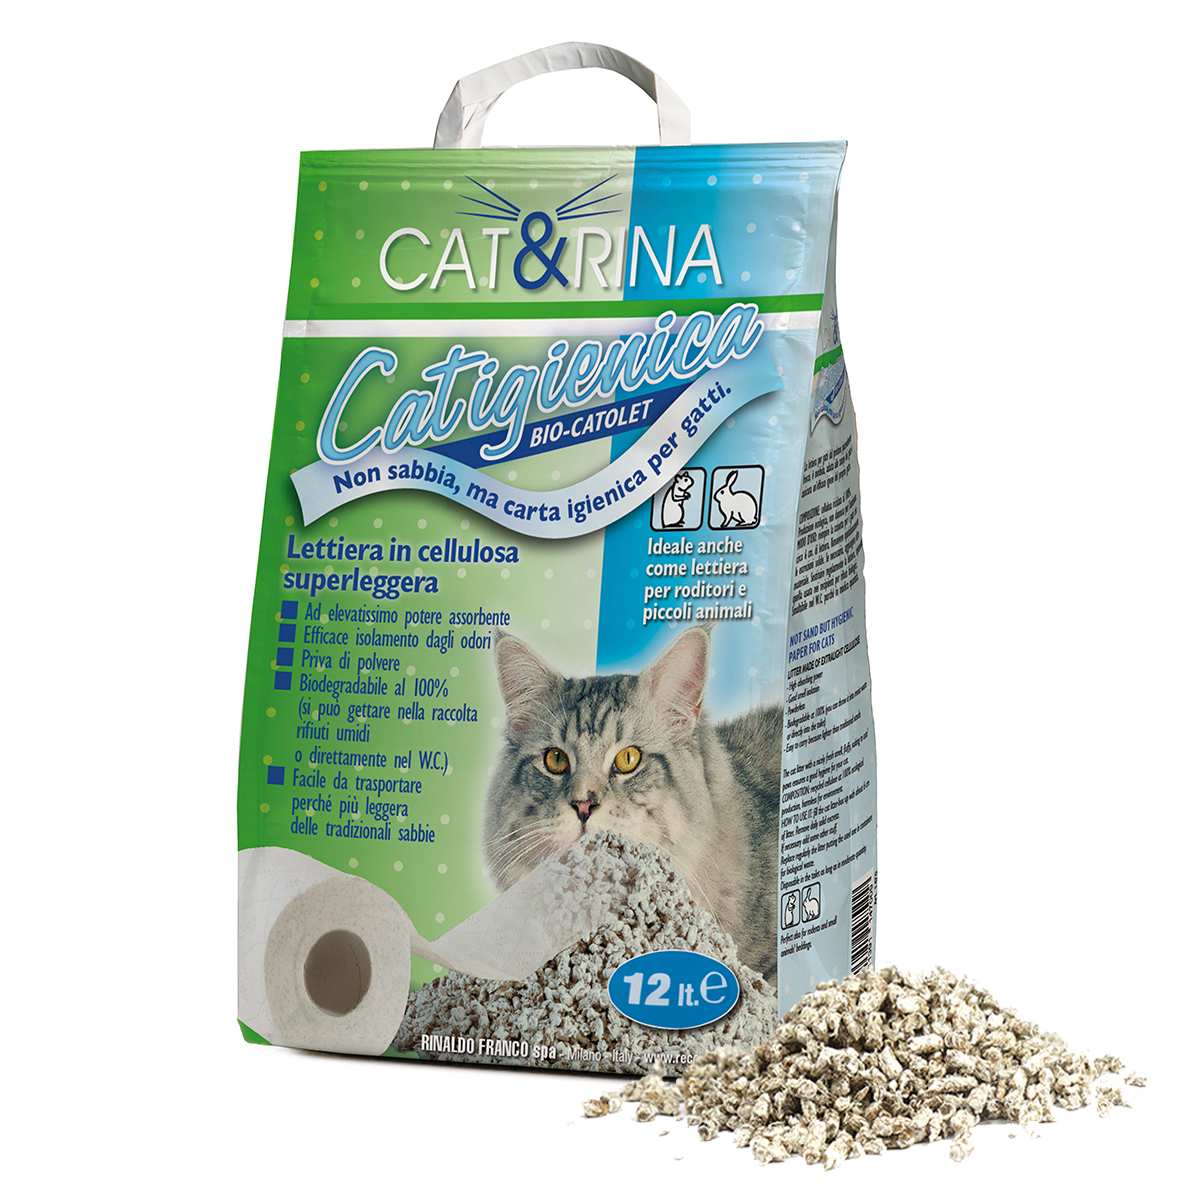 Lettiera per Gatti in Carta Riciclata Cat&Rina Catigienica 12L